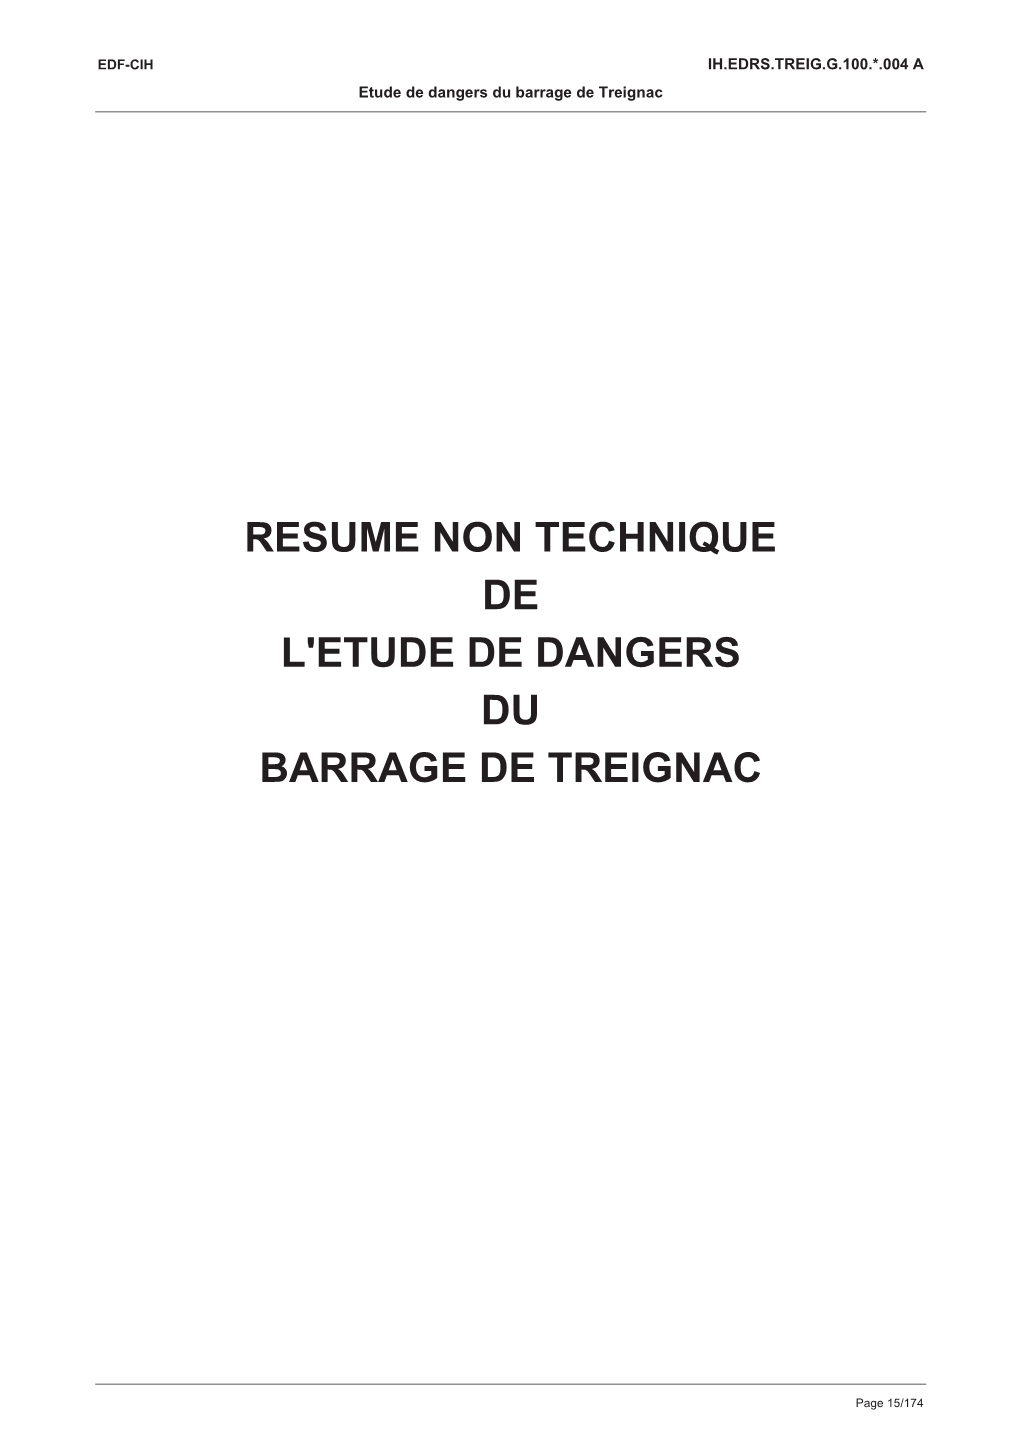 Resume Non Technique De L'etude De Dangers Du Barrage De Treignac